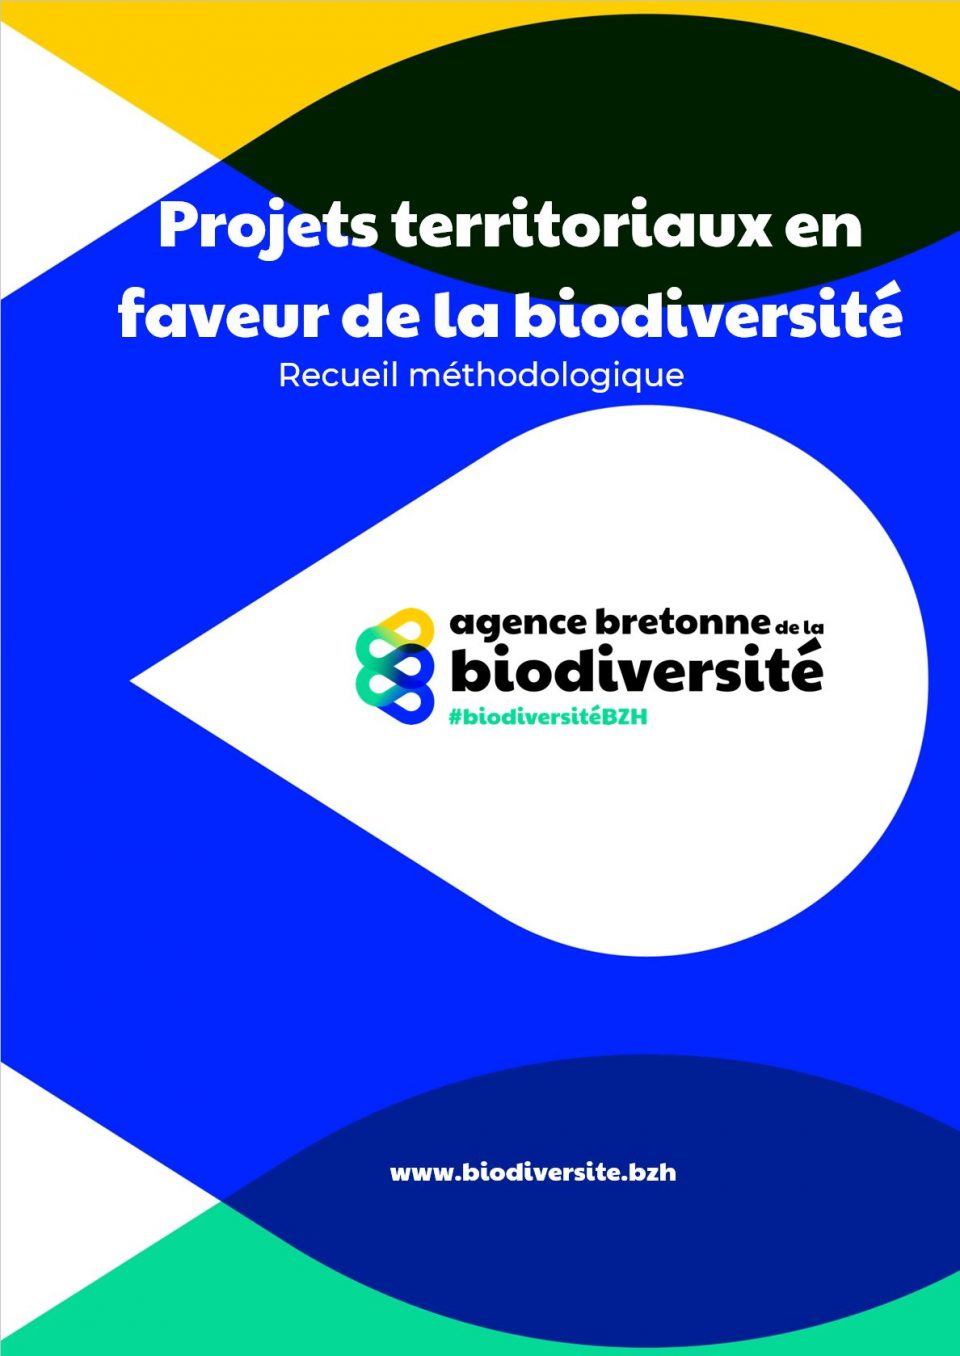 Les financements mobilisables pour déployer un projet territorial en faveur de la biodiversité